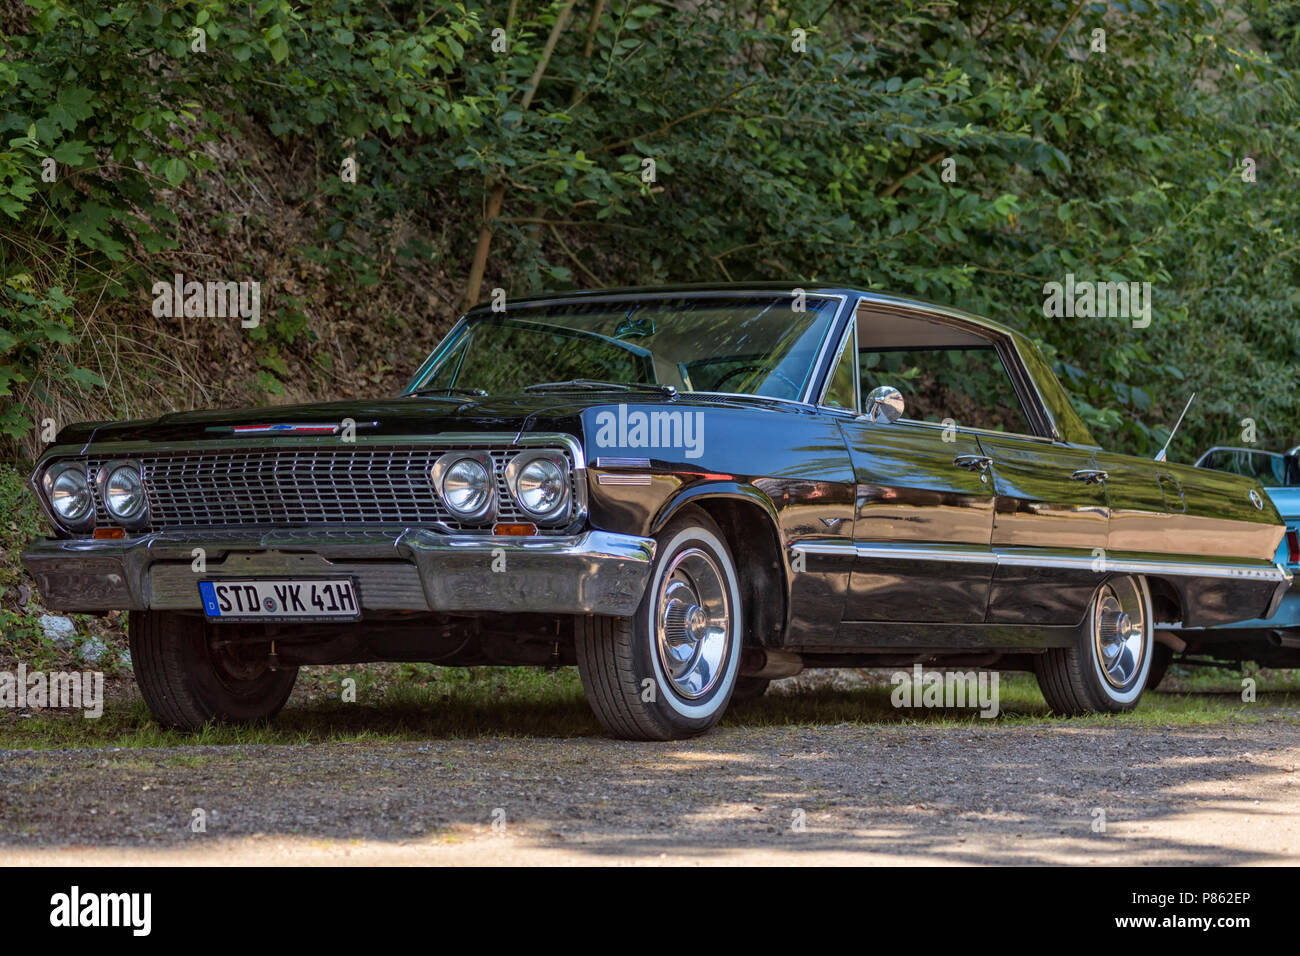 Stade, Germania - Luglio 8, 2018: un'annata 1963 Chevrolet Impala al quinto periodo estivo ci guida car meeting. Foto Stock